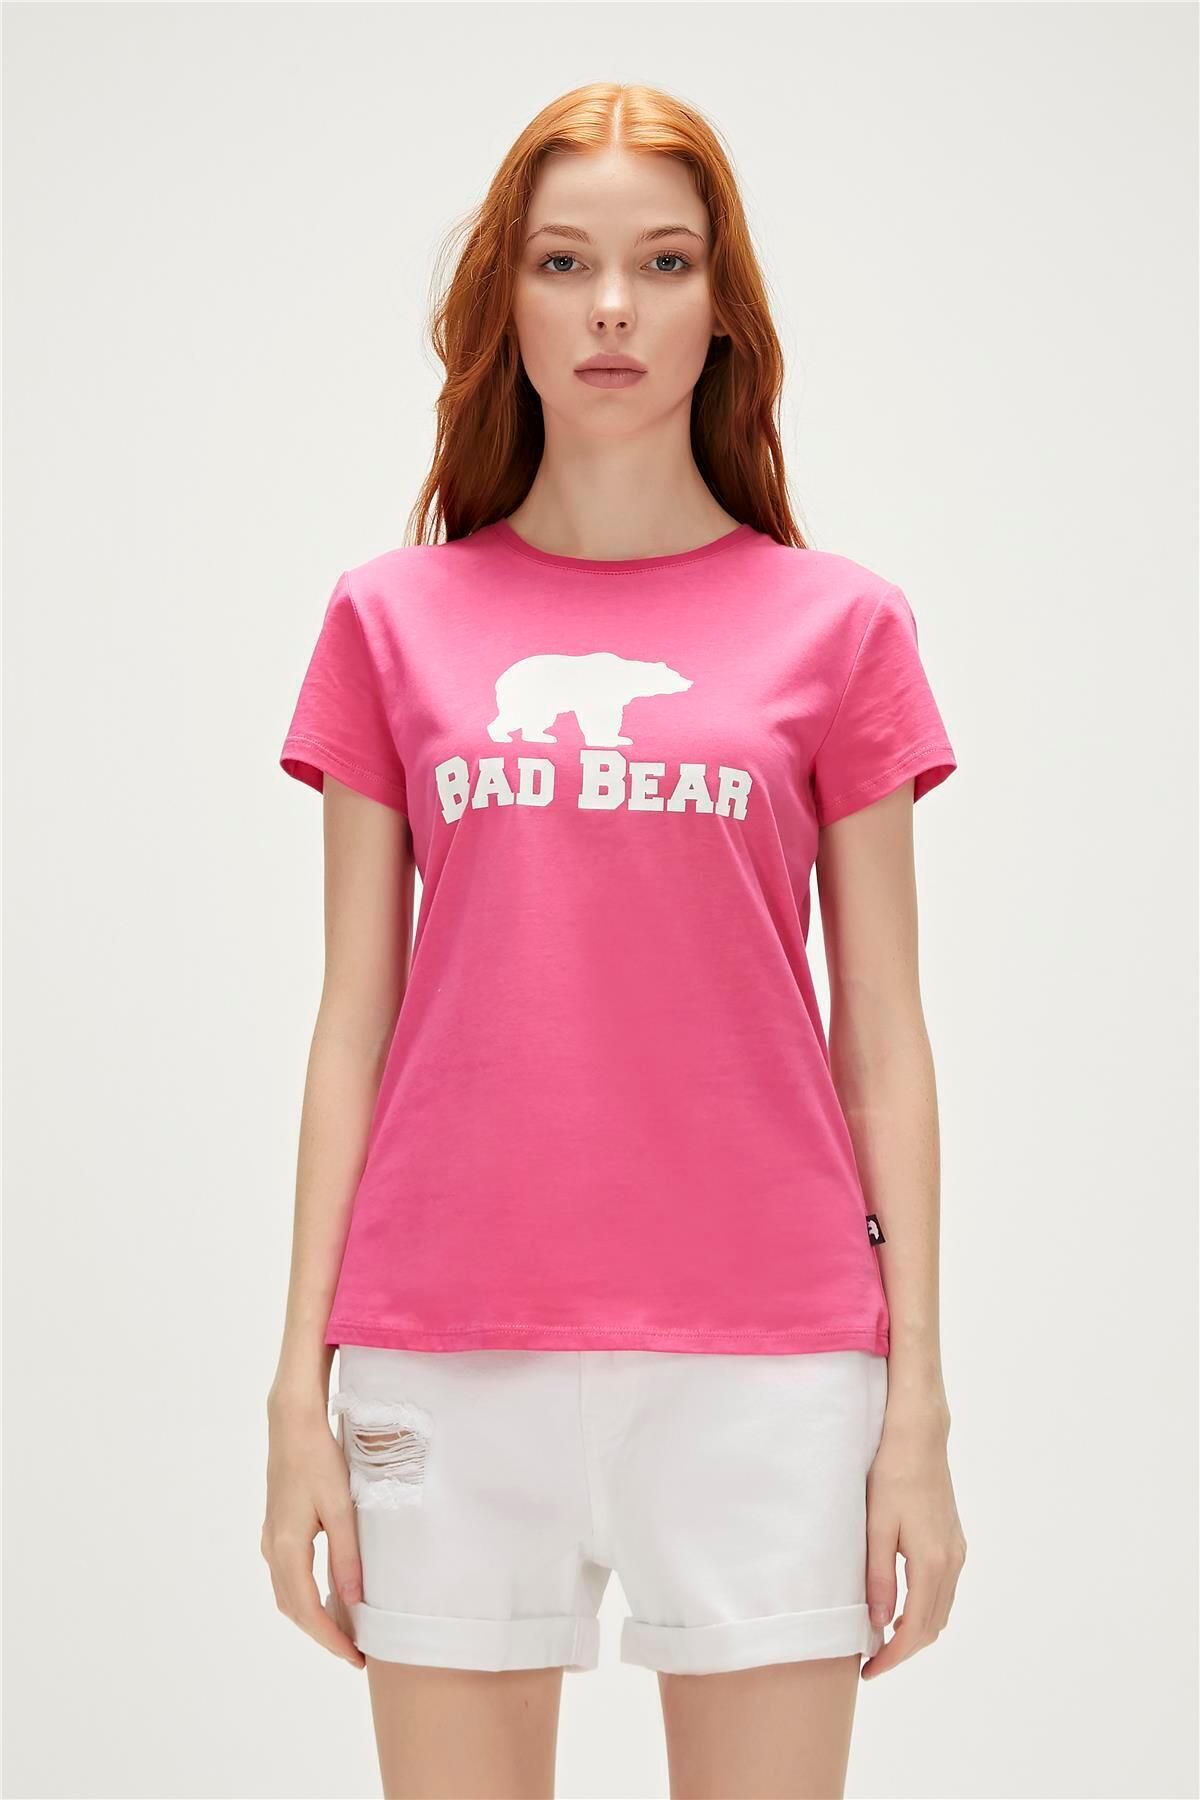 Bad Bear Logo Tee T-shirt Fuşya Pembe Baskılı Kadın Tişört